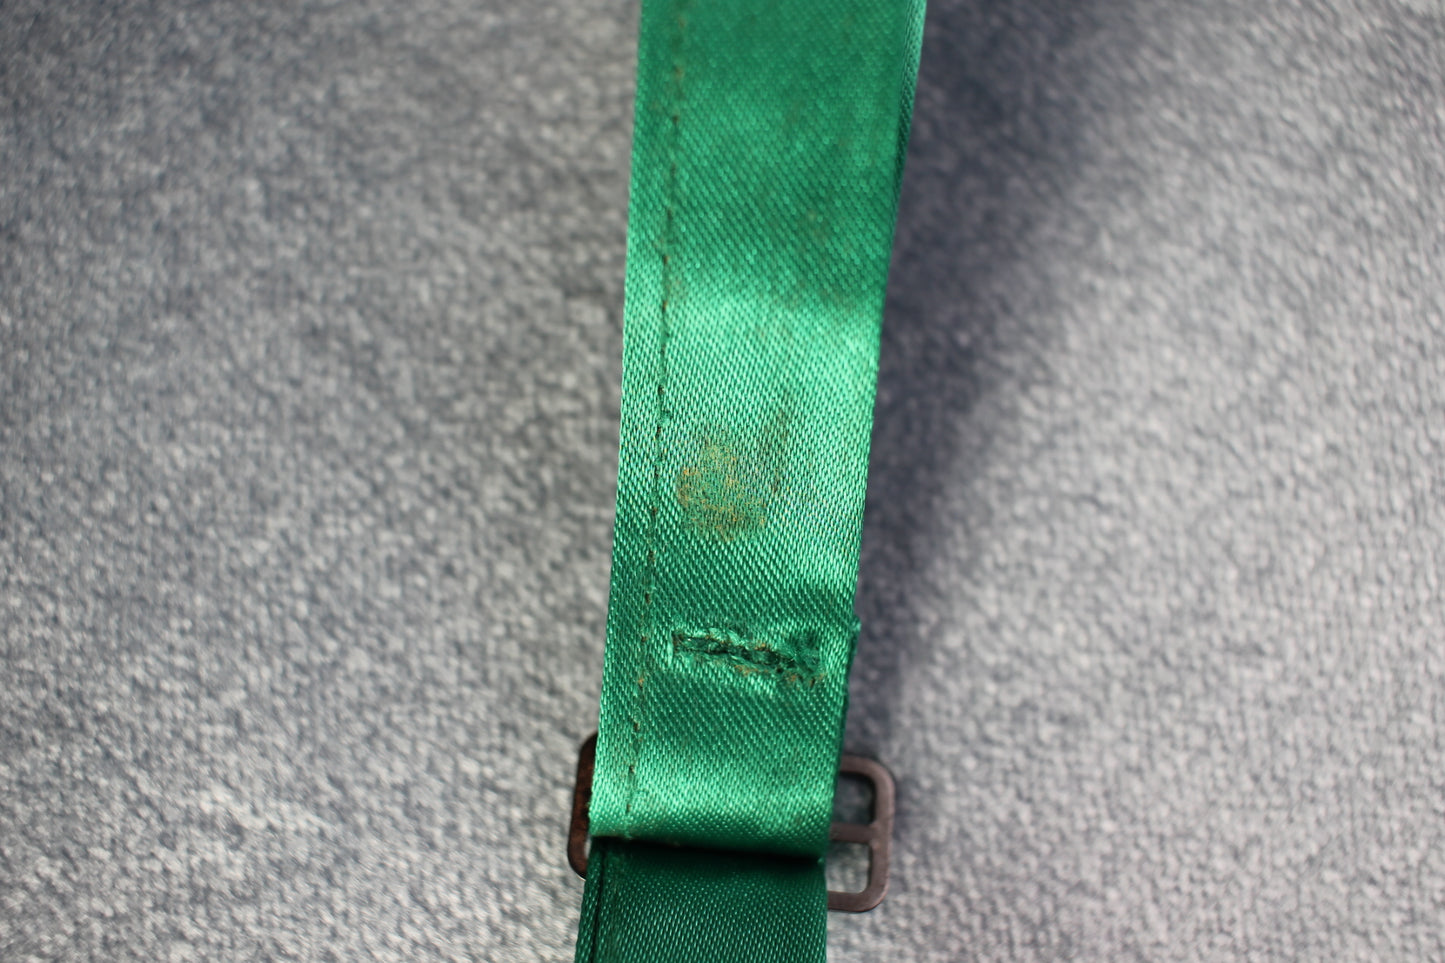 Vintage pre-tied bright green bow tie adjustable